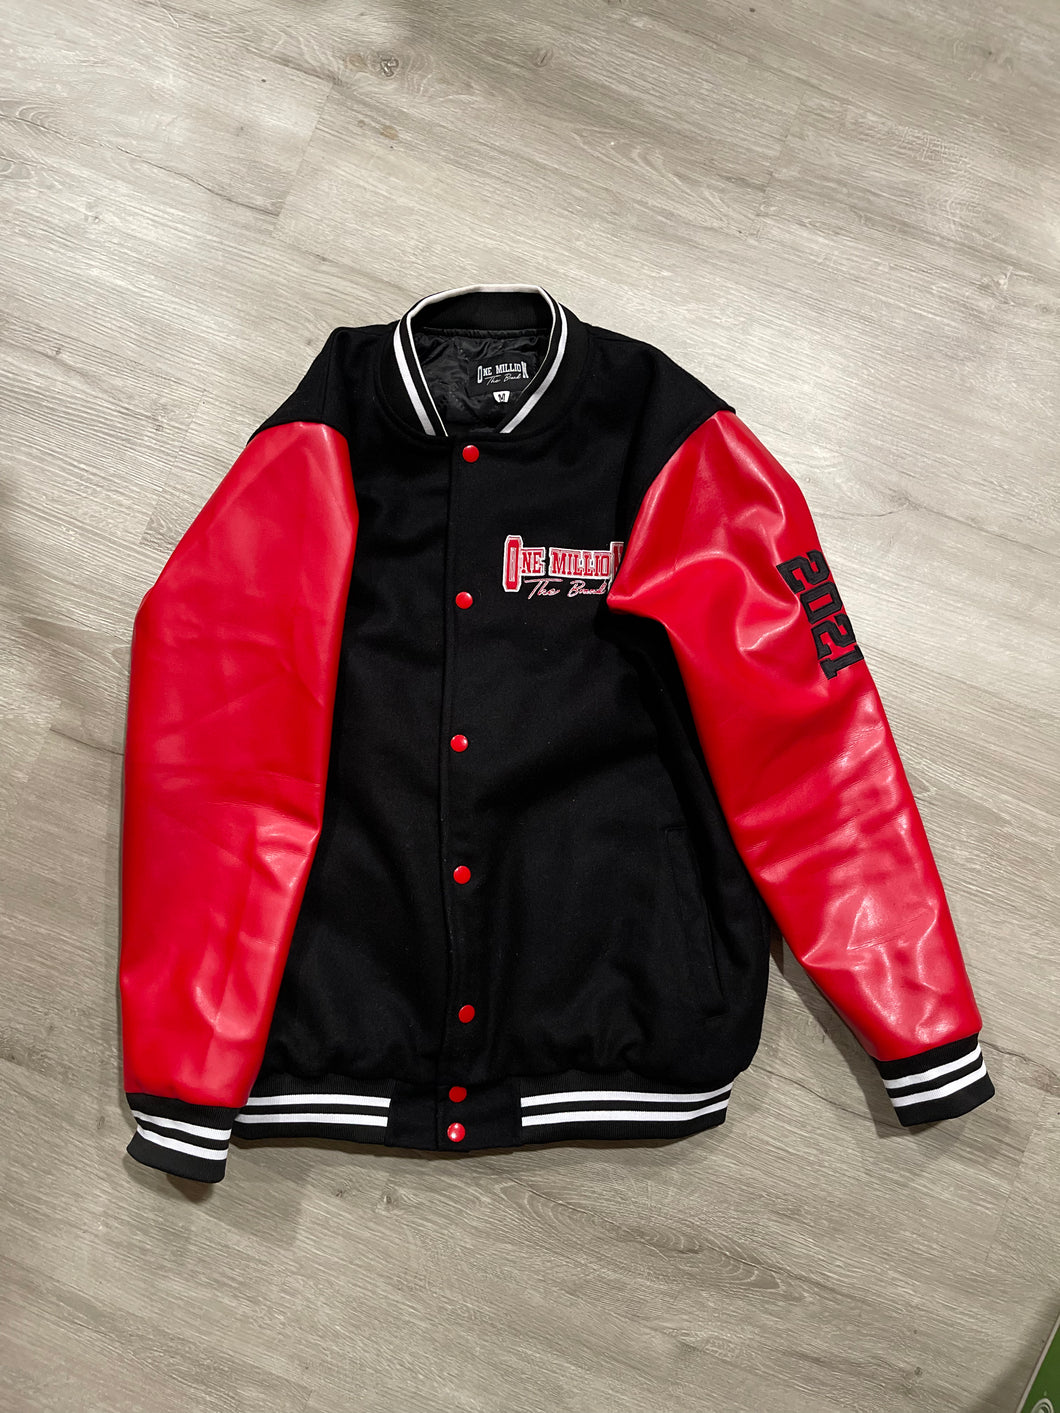 Red/black Letterman jacket